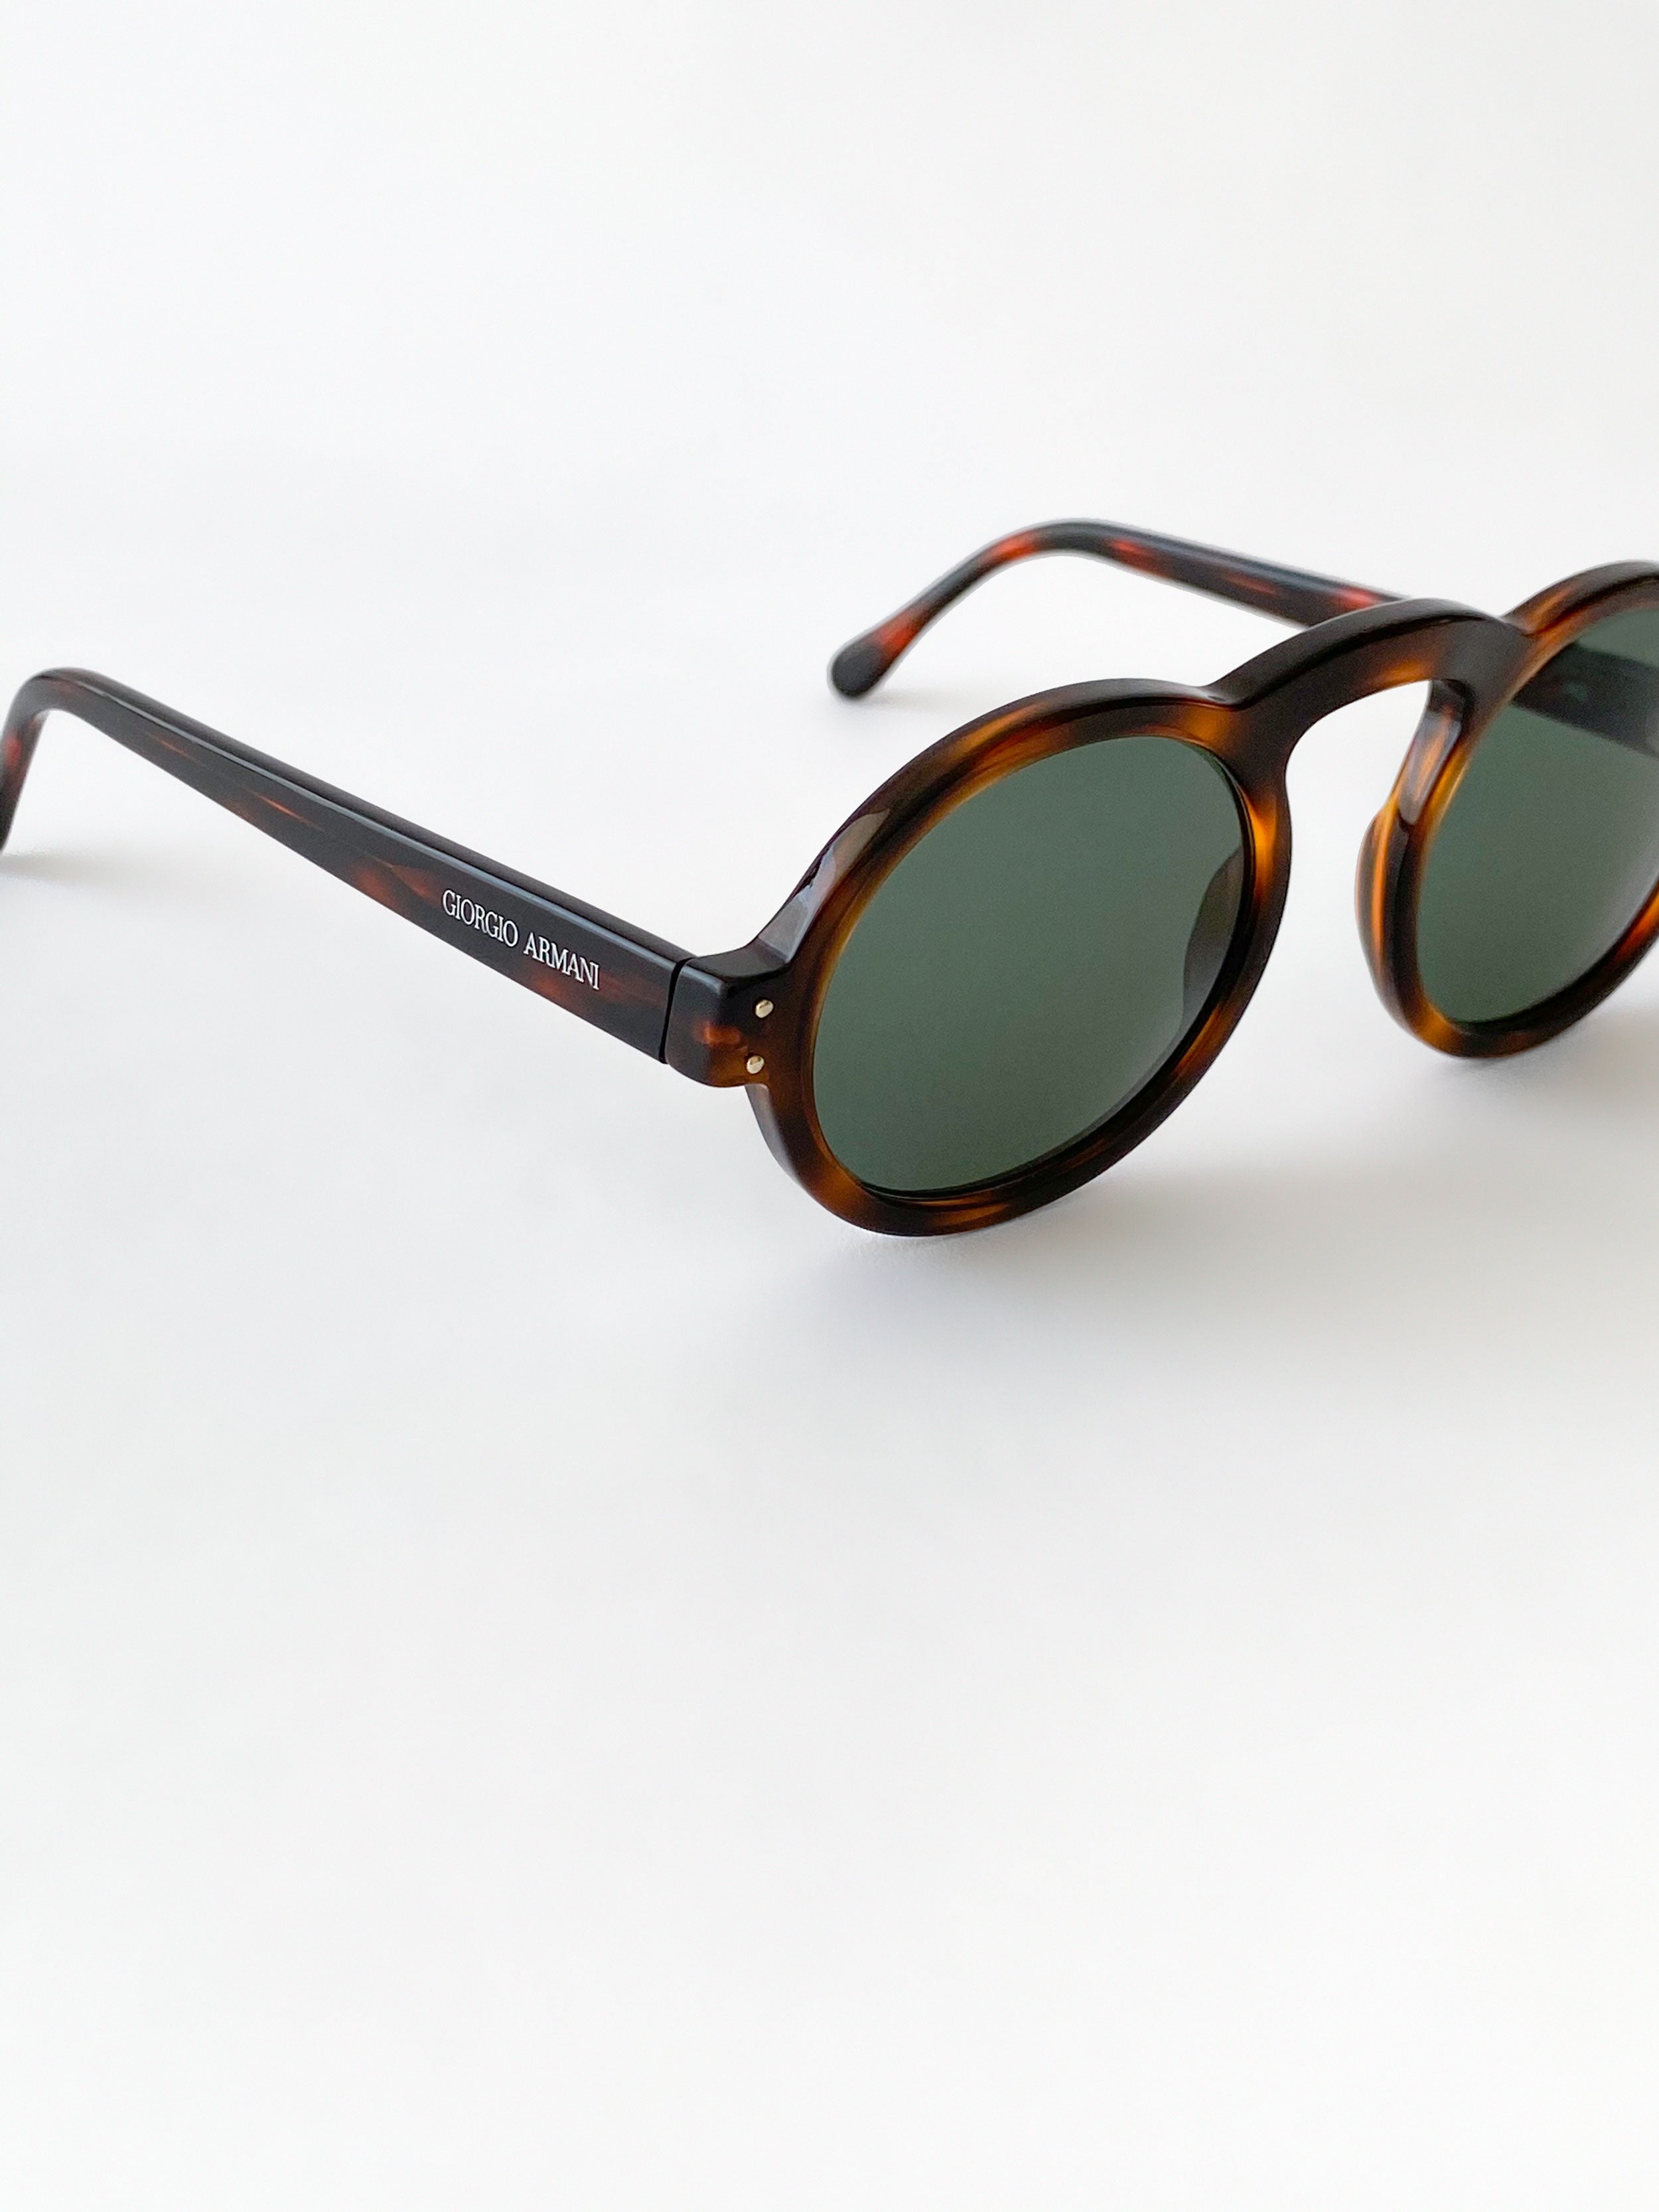 Giorgio Armani 90's sunglasses